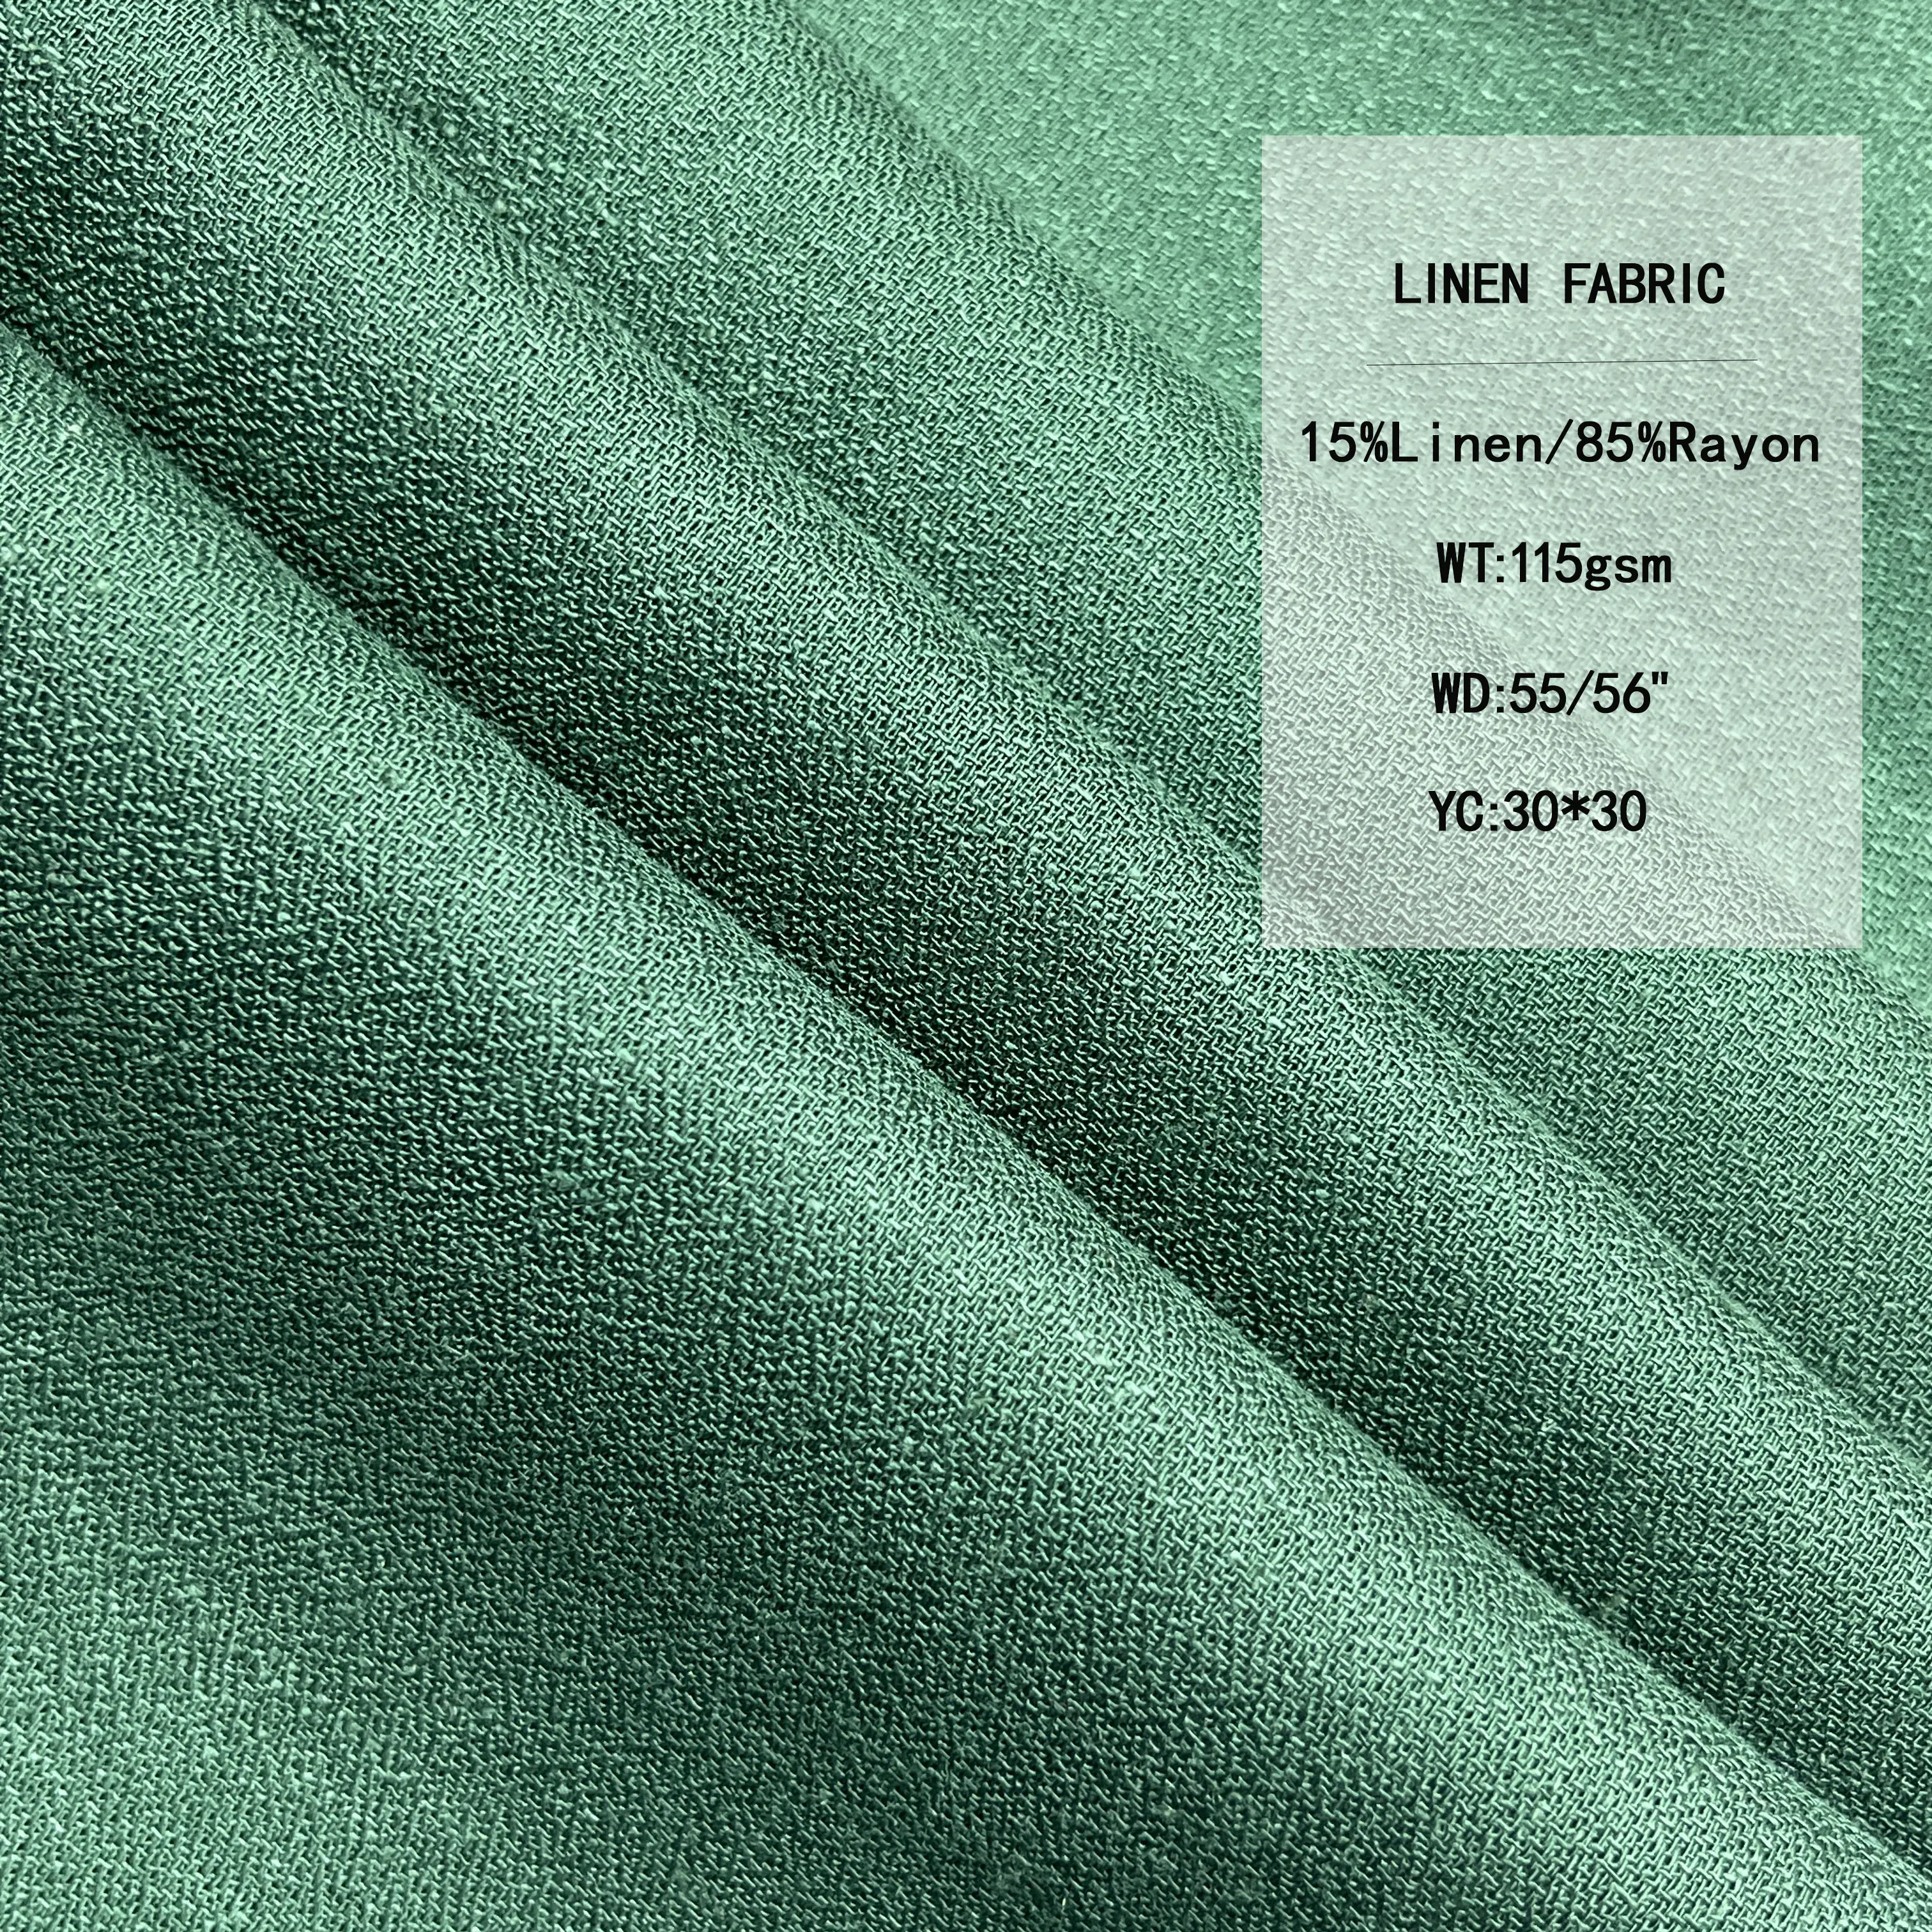 أقمشة ملابس قطنية من الكتان بنسبة 15% من نسيج رايون و85% من الكتان بمقاس 115GSM متوفرة بعدة ألوان للبيع بالجملة